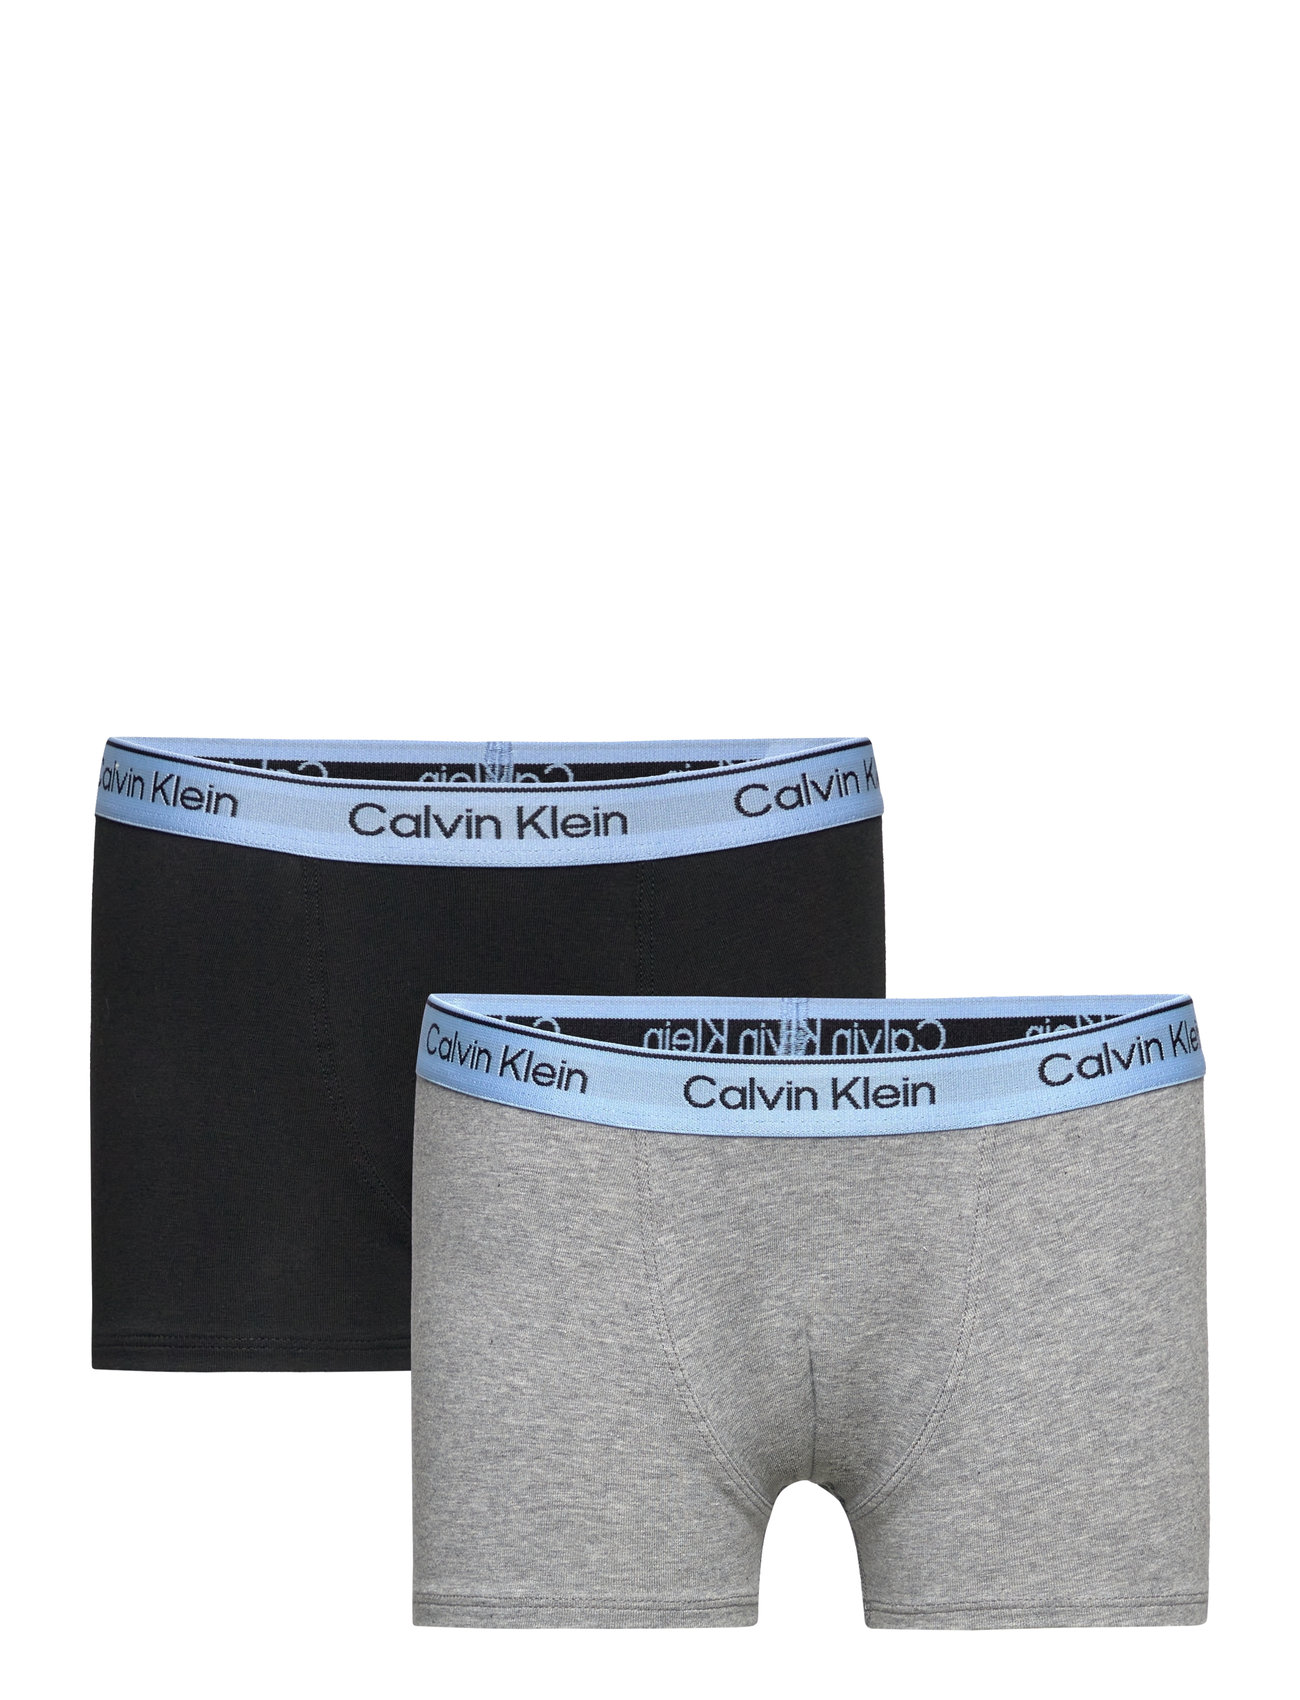 2Pk Trunk Night & Underwear Underwear Underpants Multi/patterned Calvin Klein